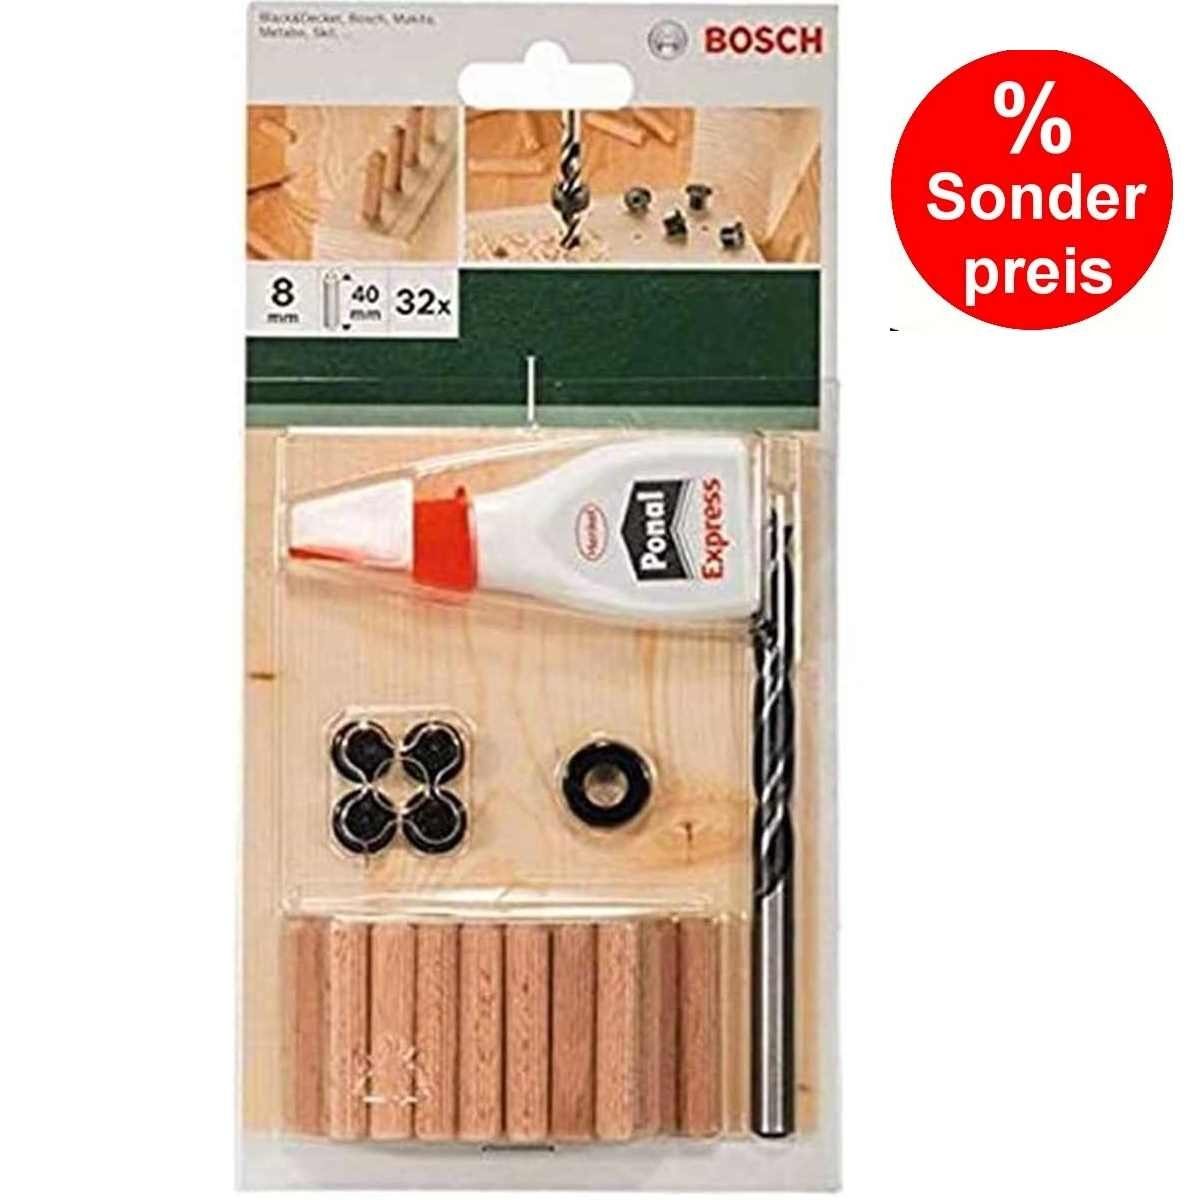 BOSCH Bohrfutter Bosch 32-tlg. Holzdübel Set 8 x 40 mm, Bohrer Tiefenstop 4 Dübelsetzer